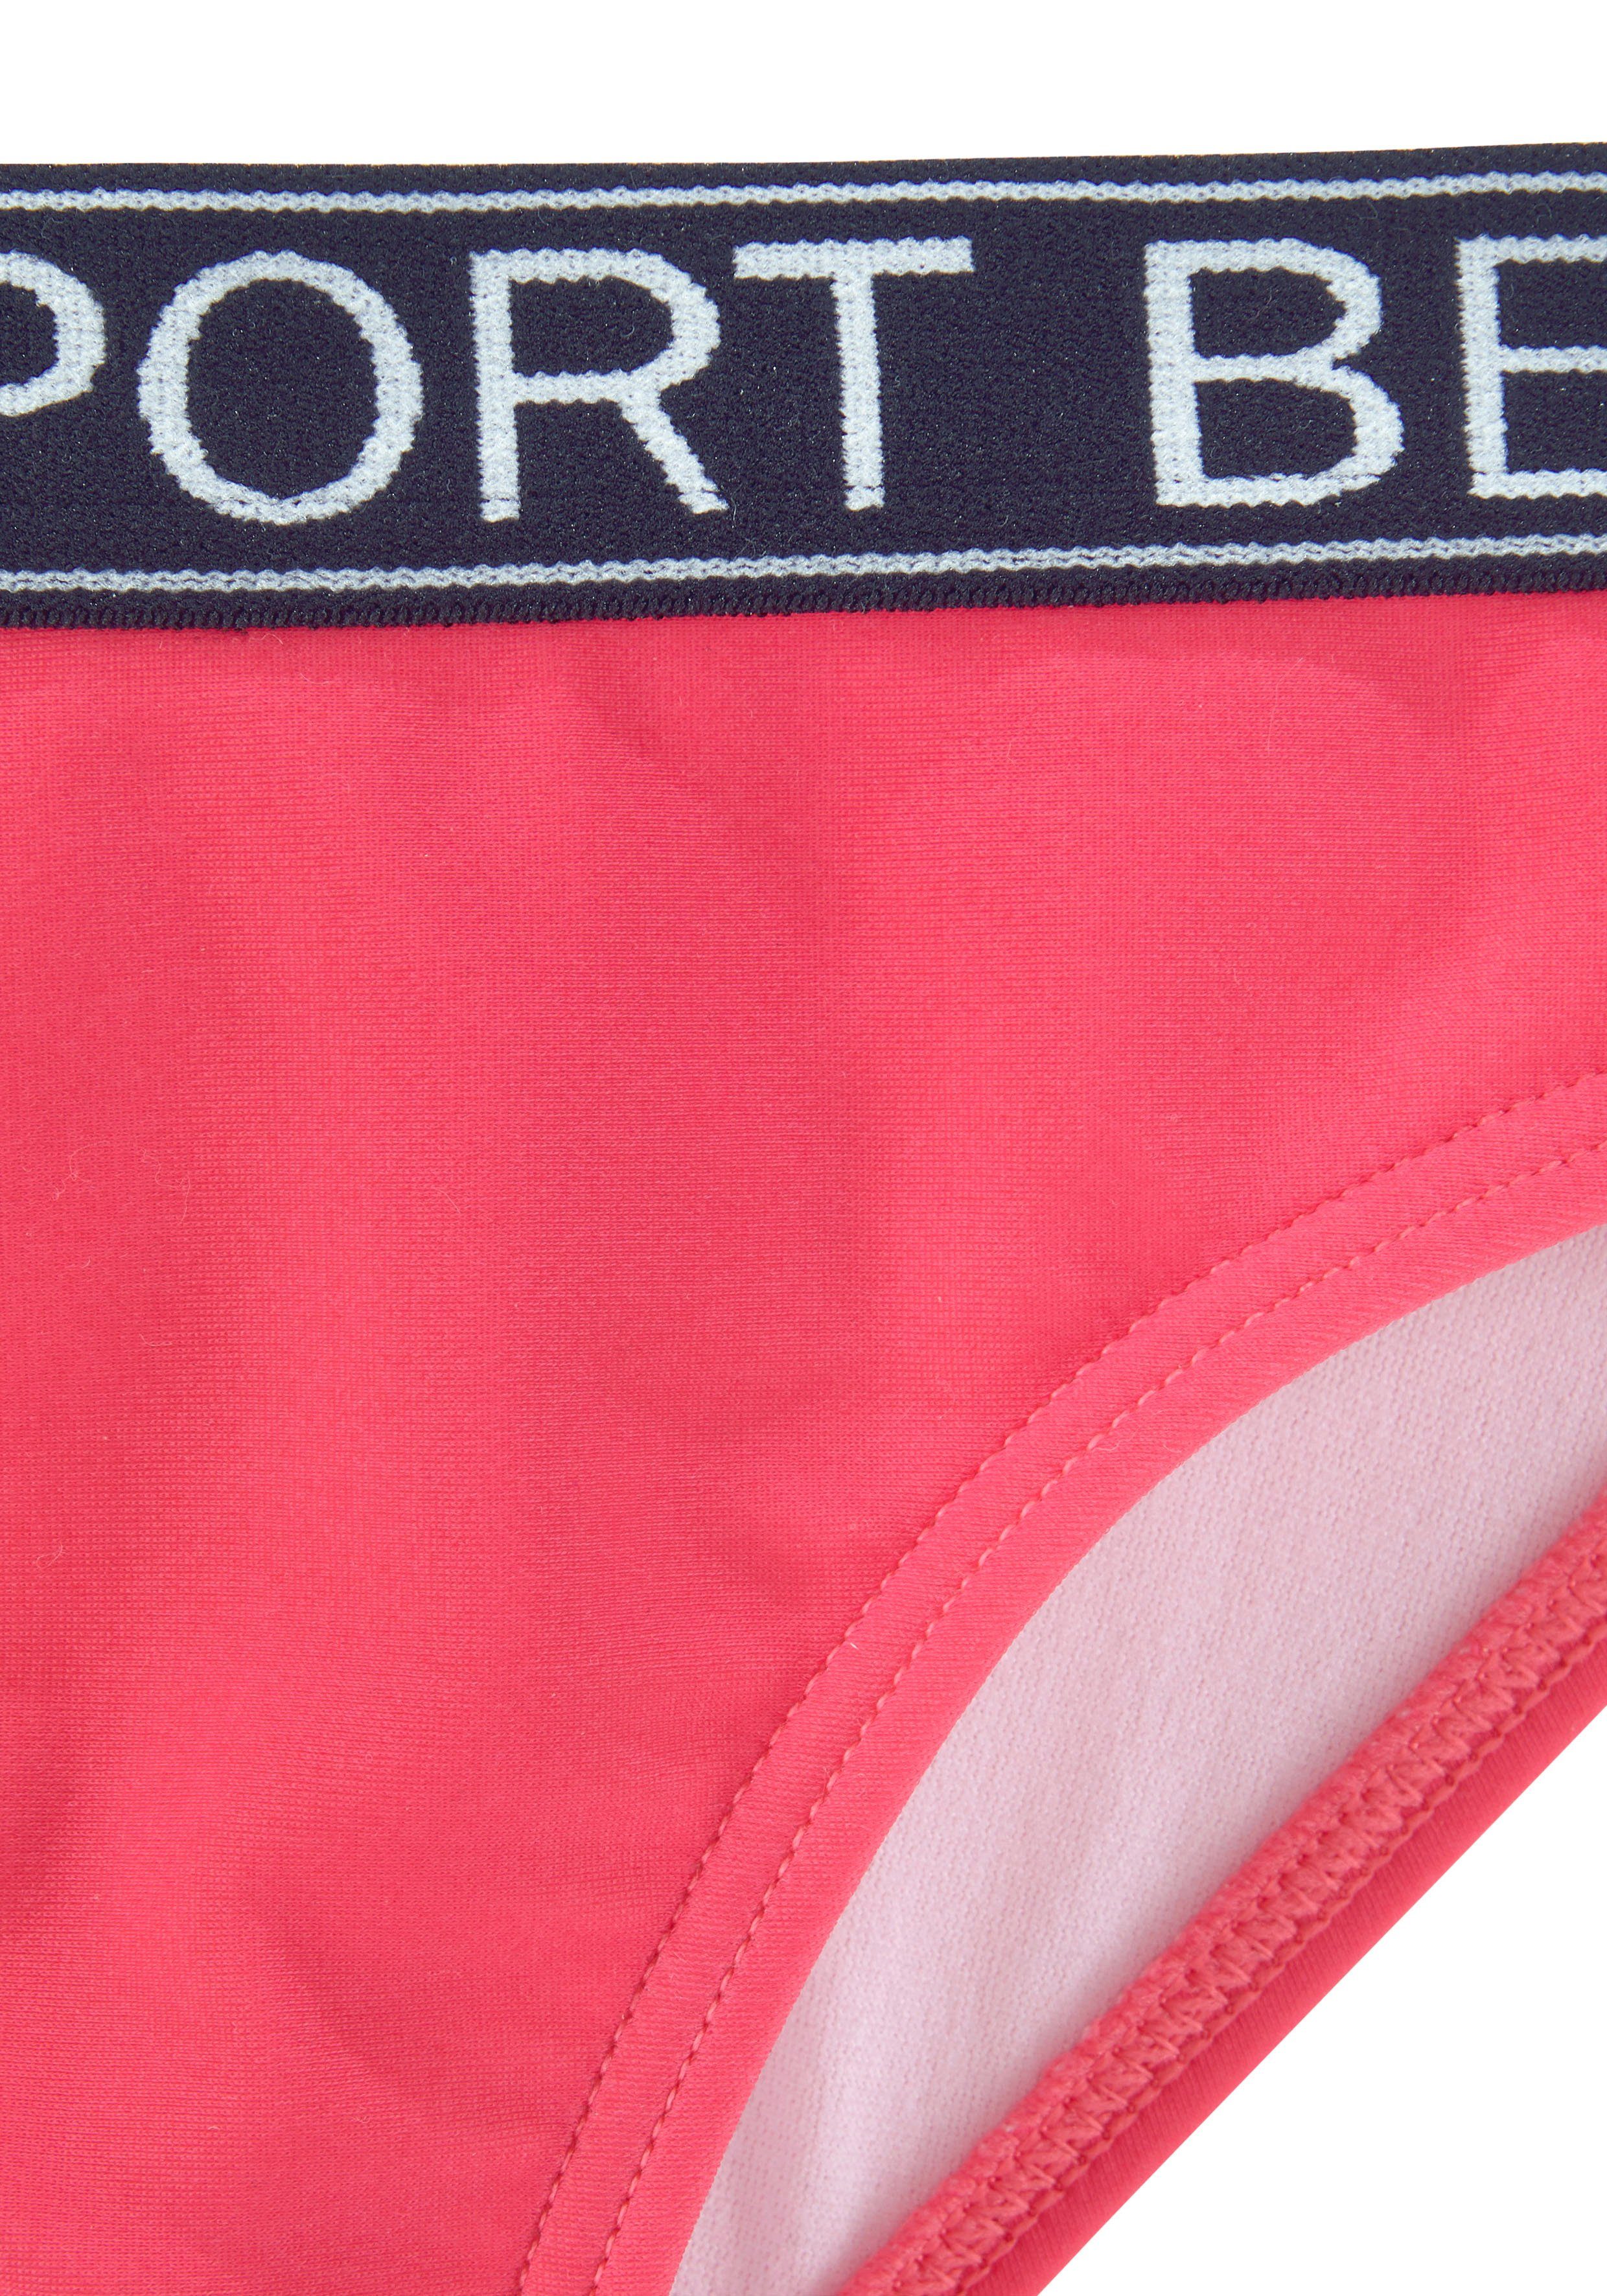 Bench. Bustier-Bikini Yva Farben und pink Design in sportlichem Kids